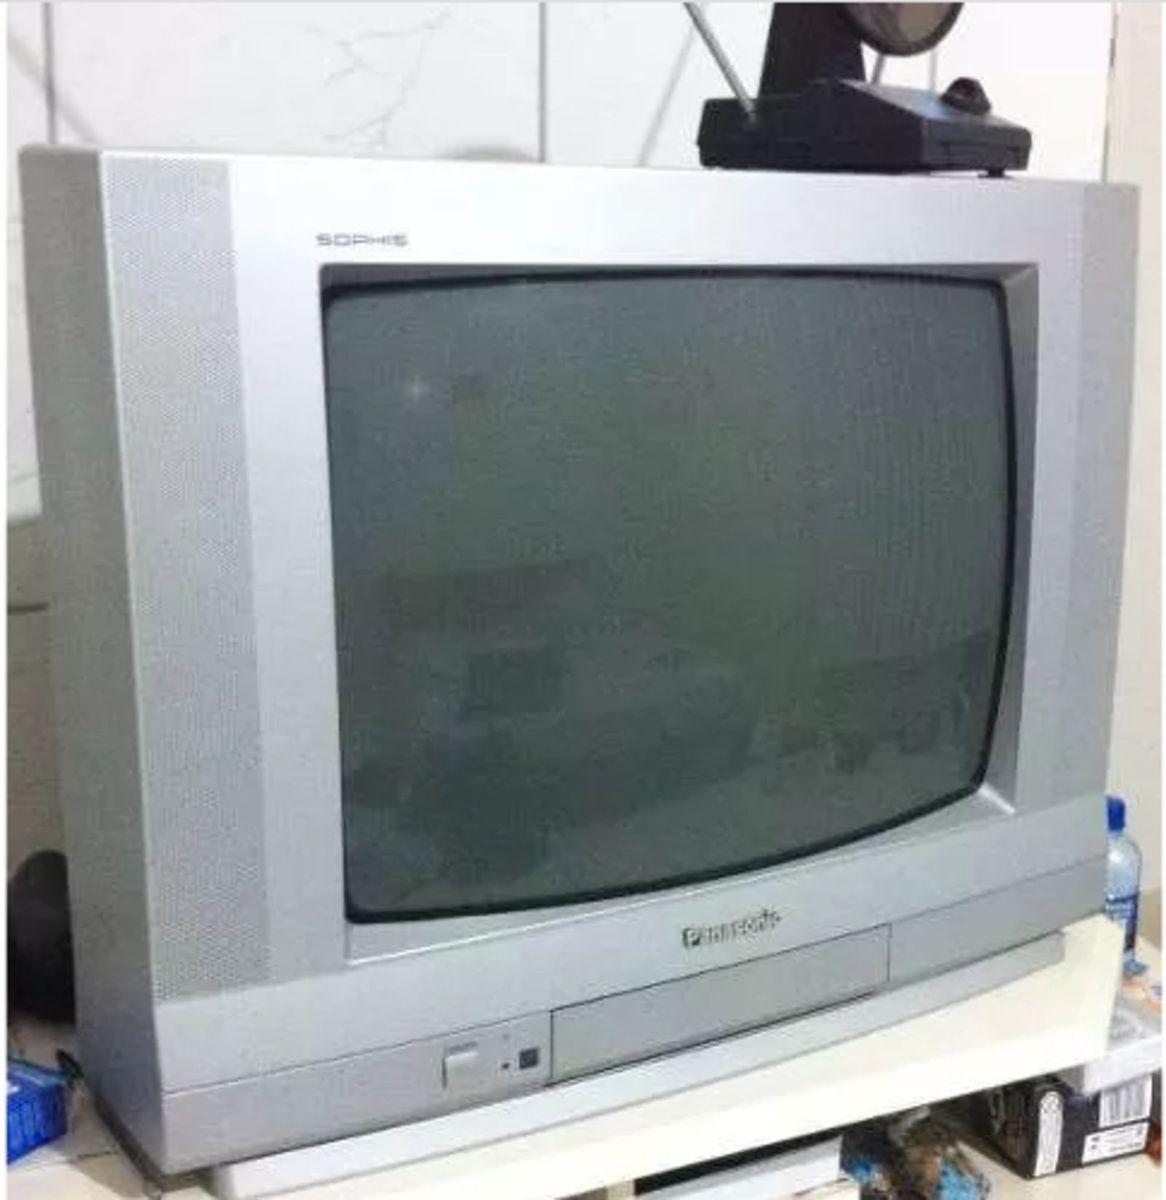 Descubra um mundo de possibilidades na sua TV Panasonic antiga! 📺✨ E